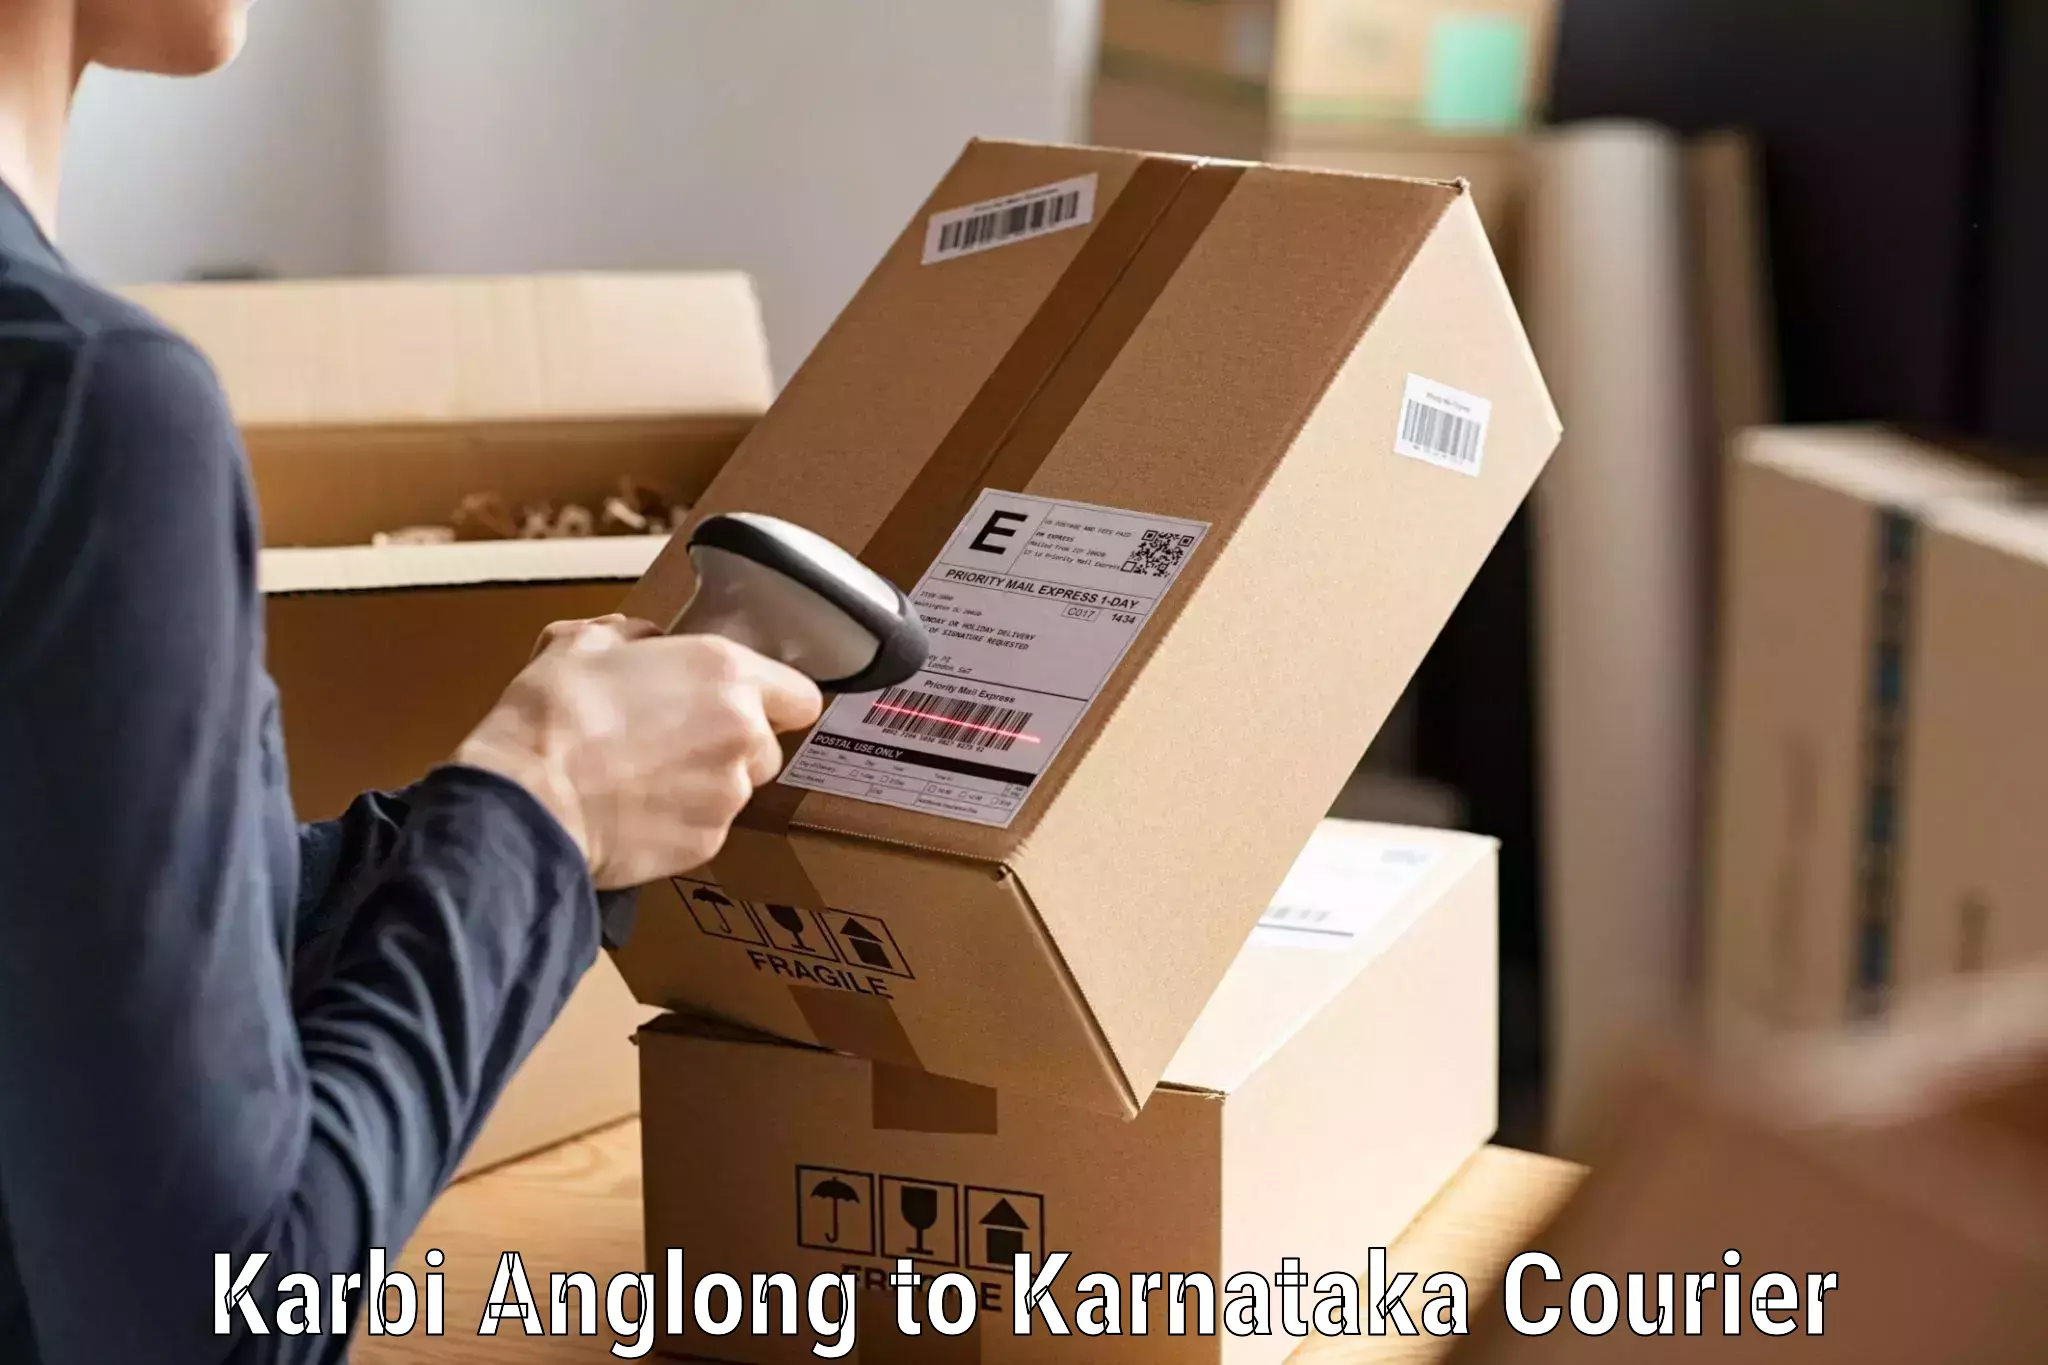 Global courier networks Karbi Anglong to Sakleshpur